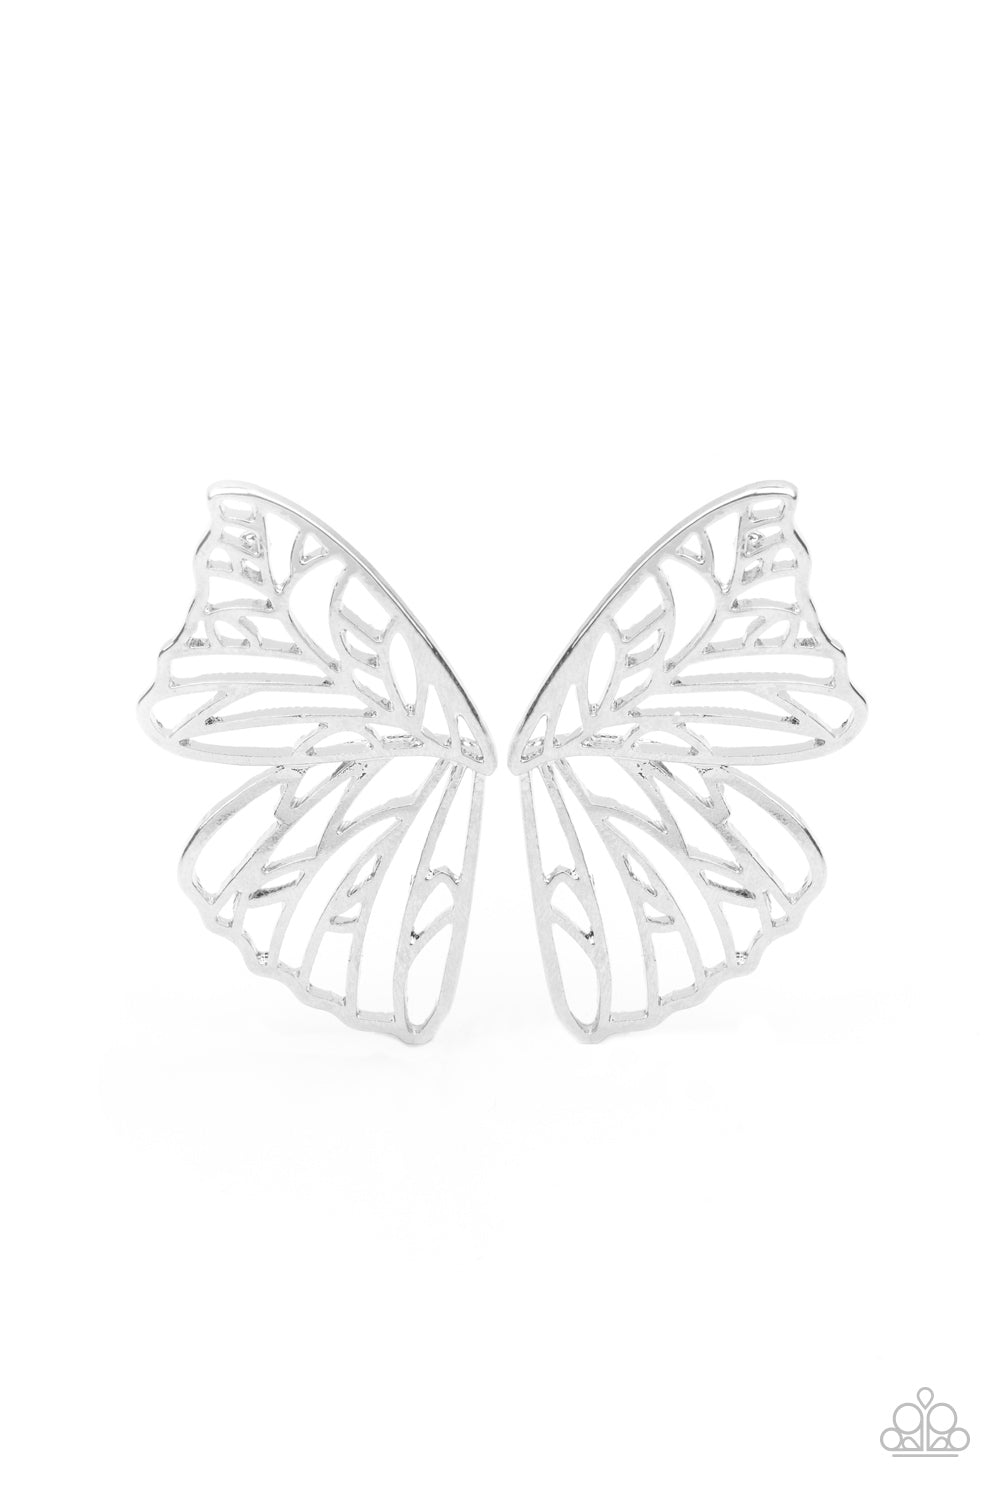 Butterfly Frills - Silver Post Earring freeshipping - JewLz4u Gemstone Gallery